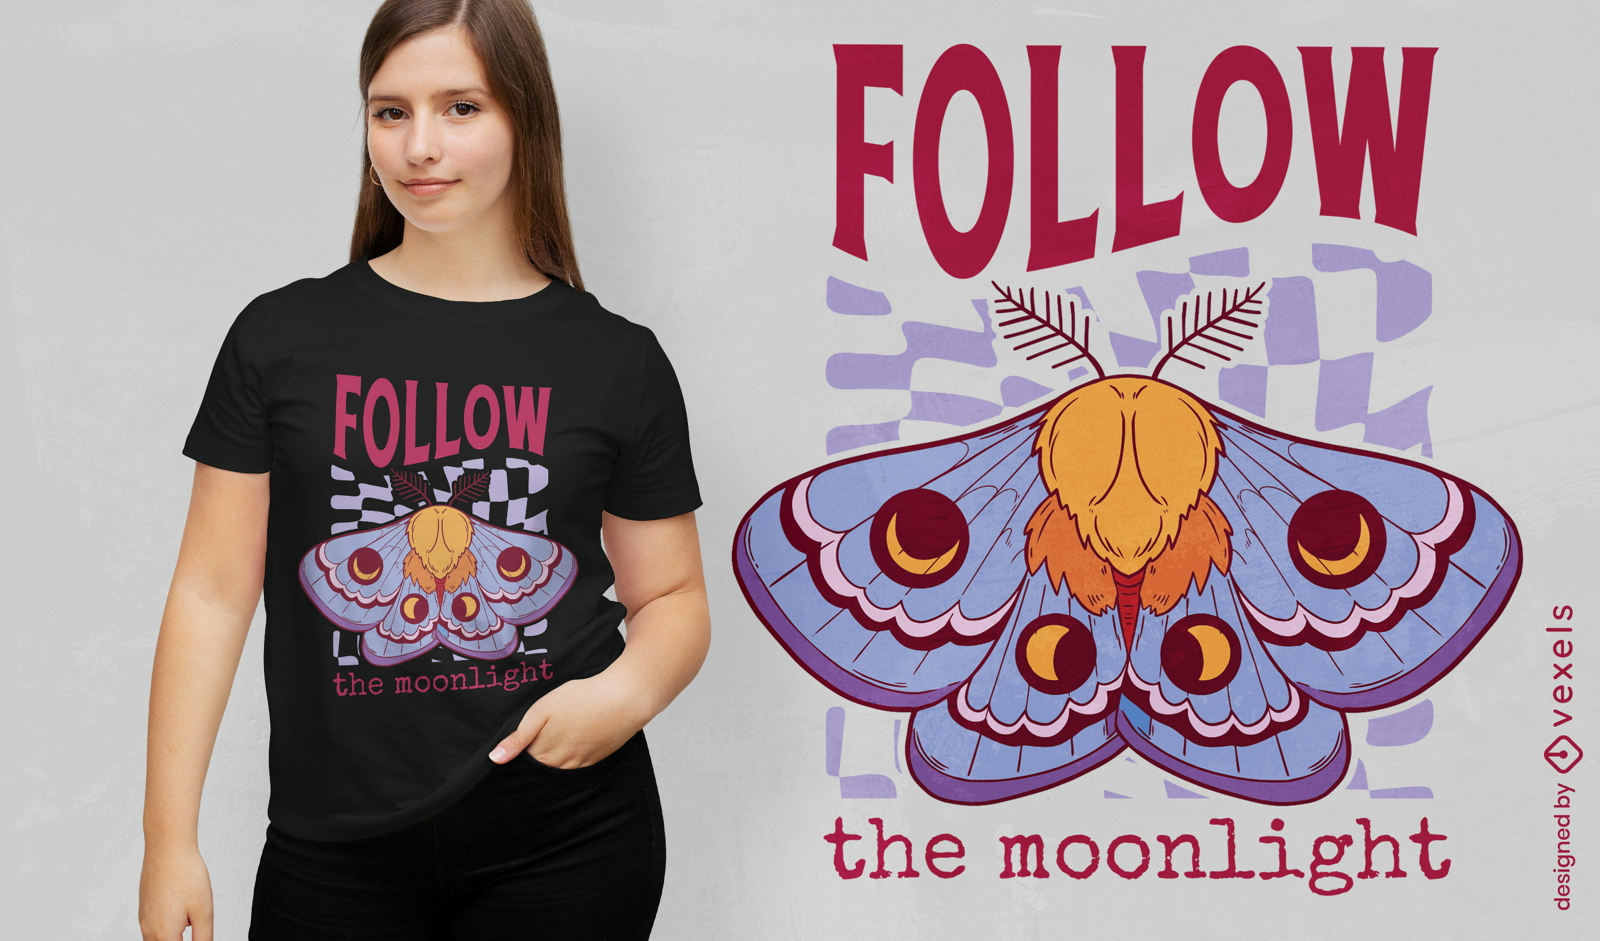 Folgen Sie dem esoterischen Hexen-T-Shirt-Design des Mondlichts